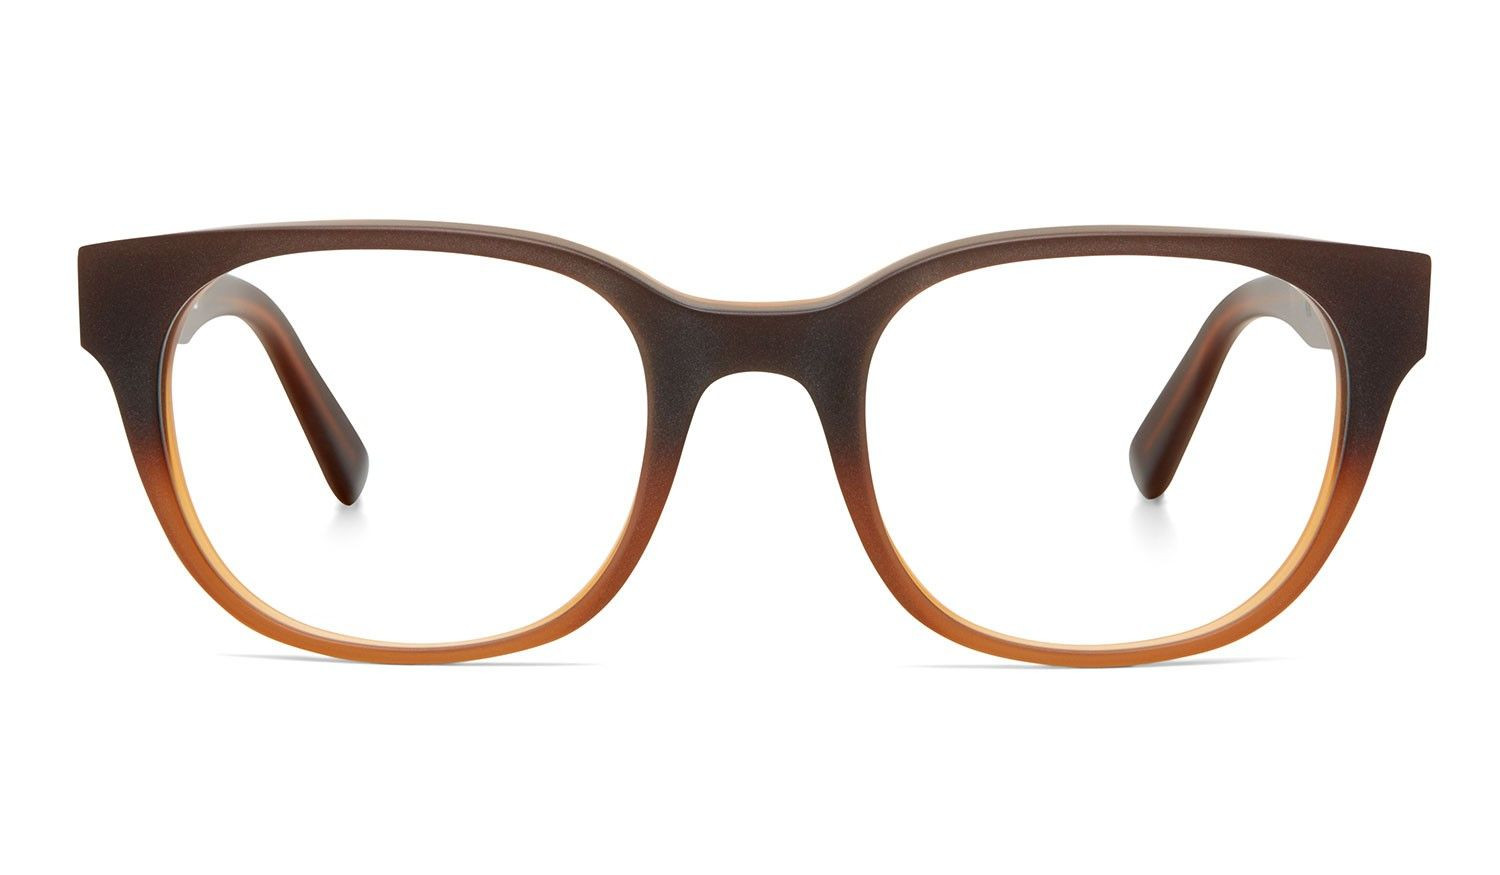 Brillen Zuhause Anprobieren
 Brillen für Herren Zuhause & online anprobieren – Jetzt